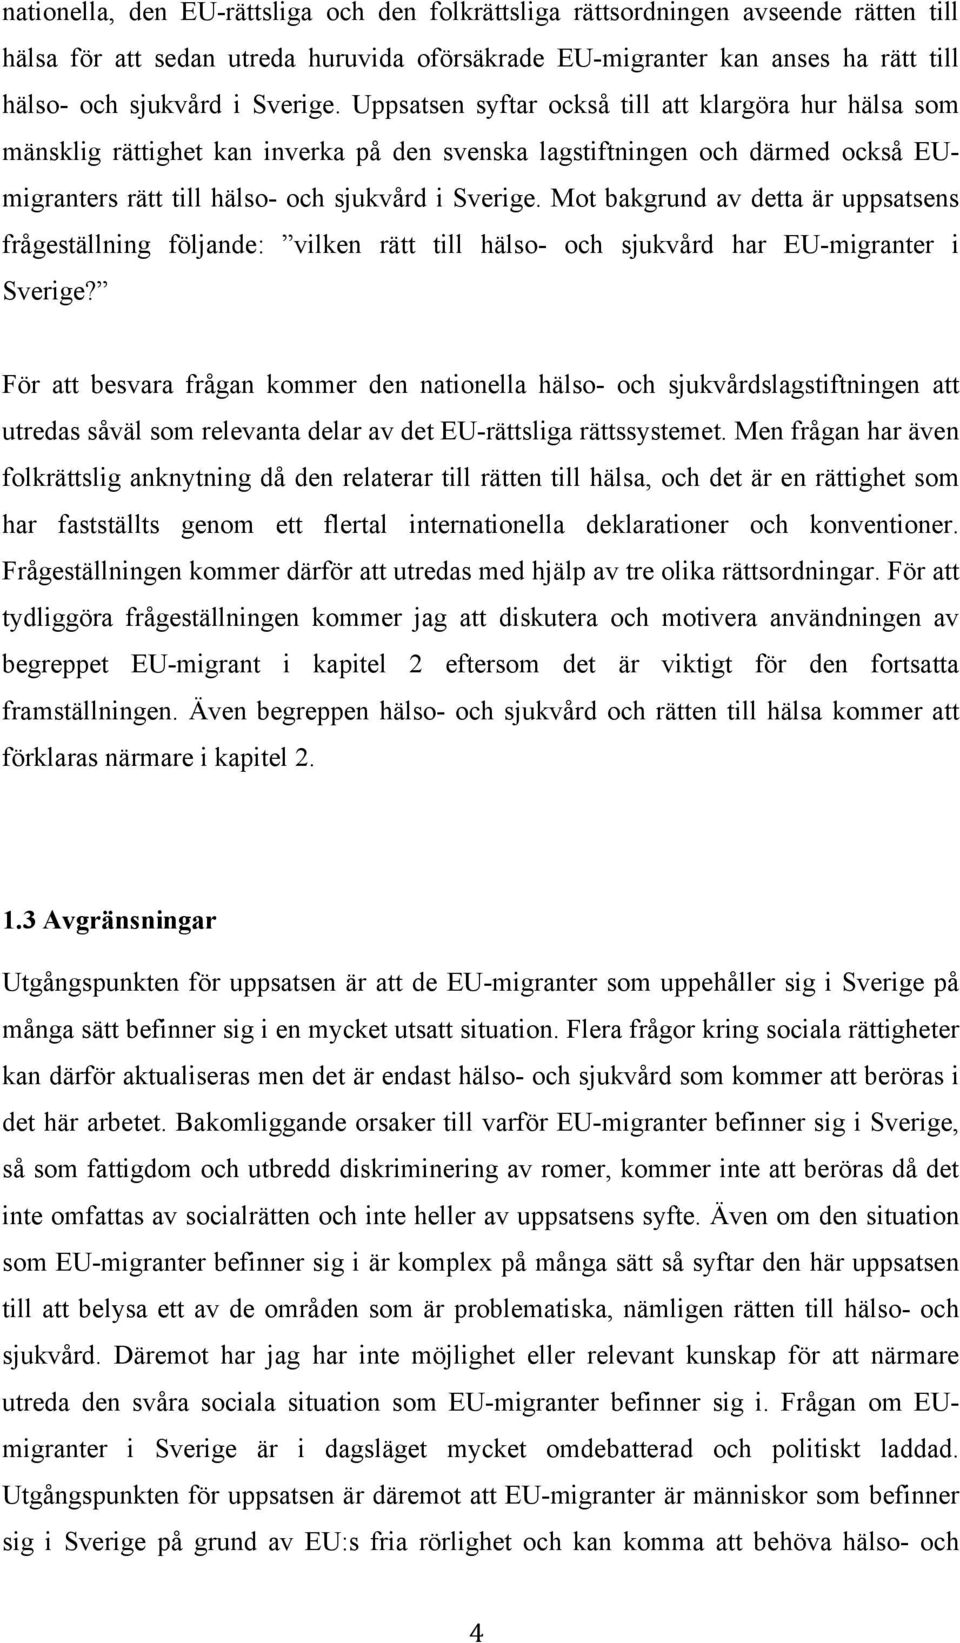 Mot bakgrund av detta är uppsatsens frågeställning följande: vilken rätt till hälso- och sjukvård har EU-migranter i Sverige?